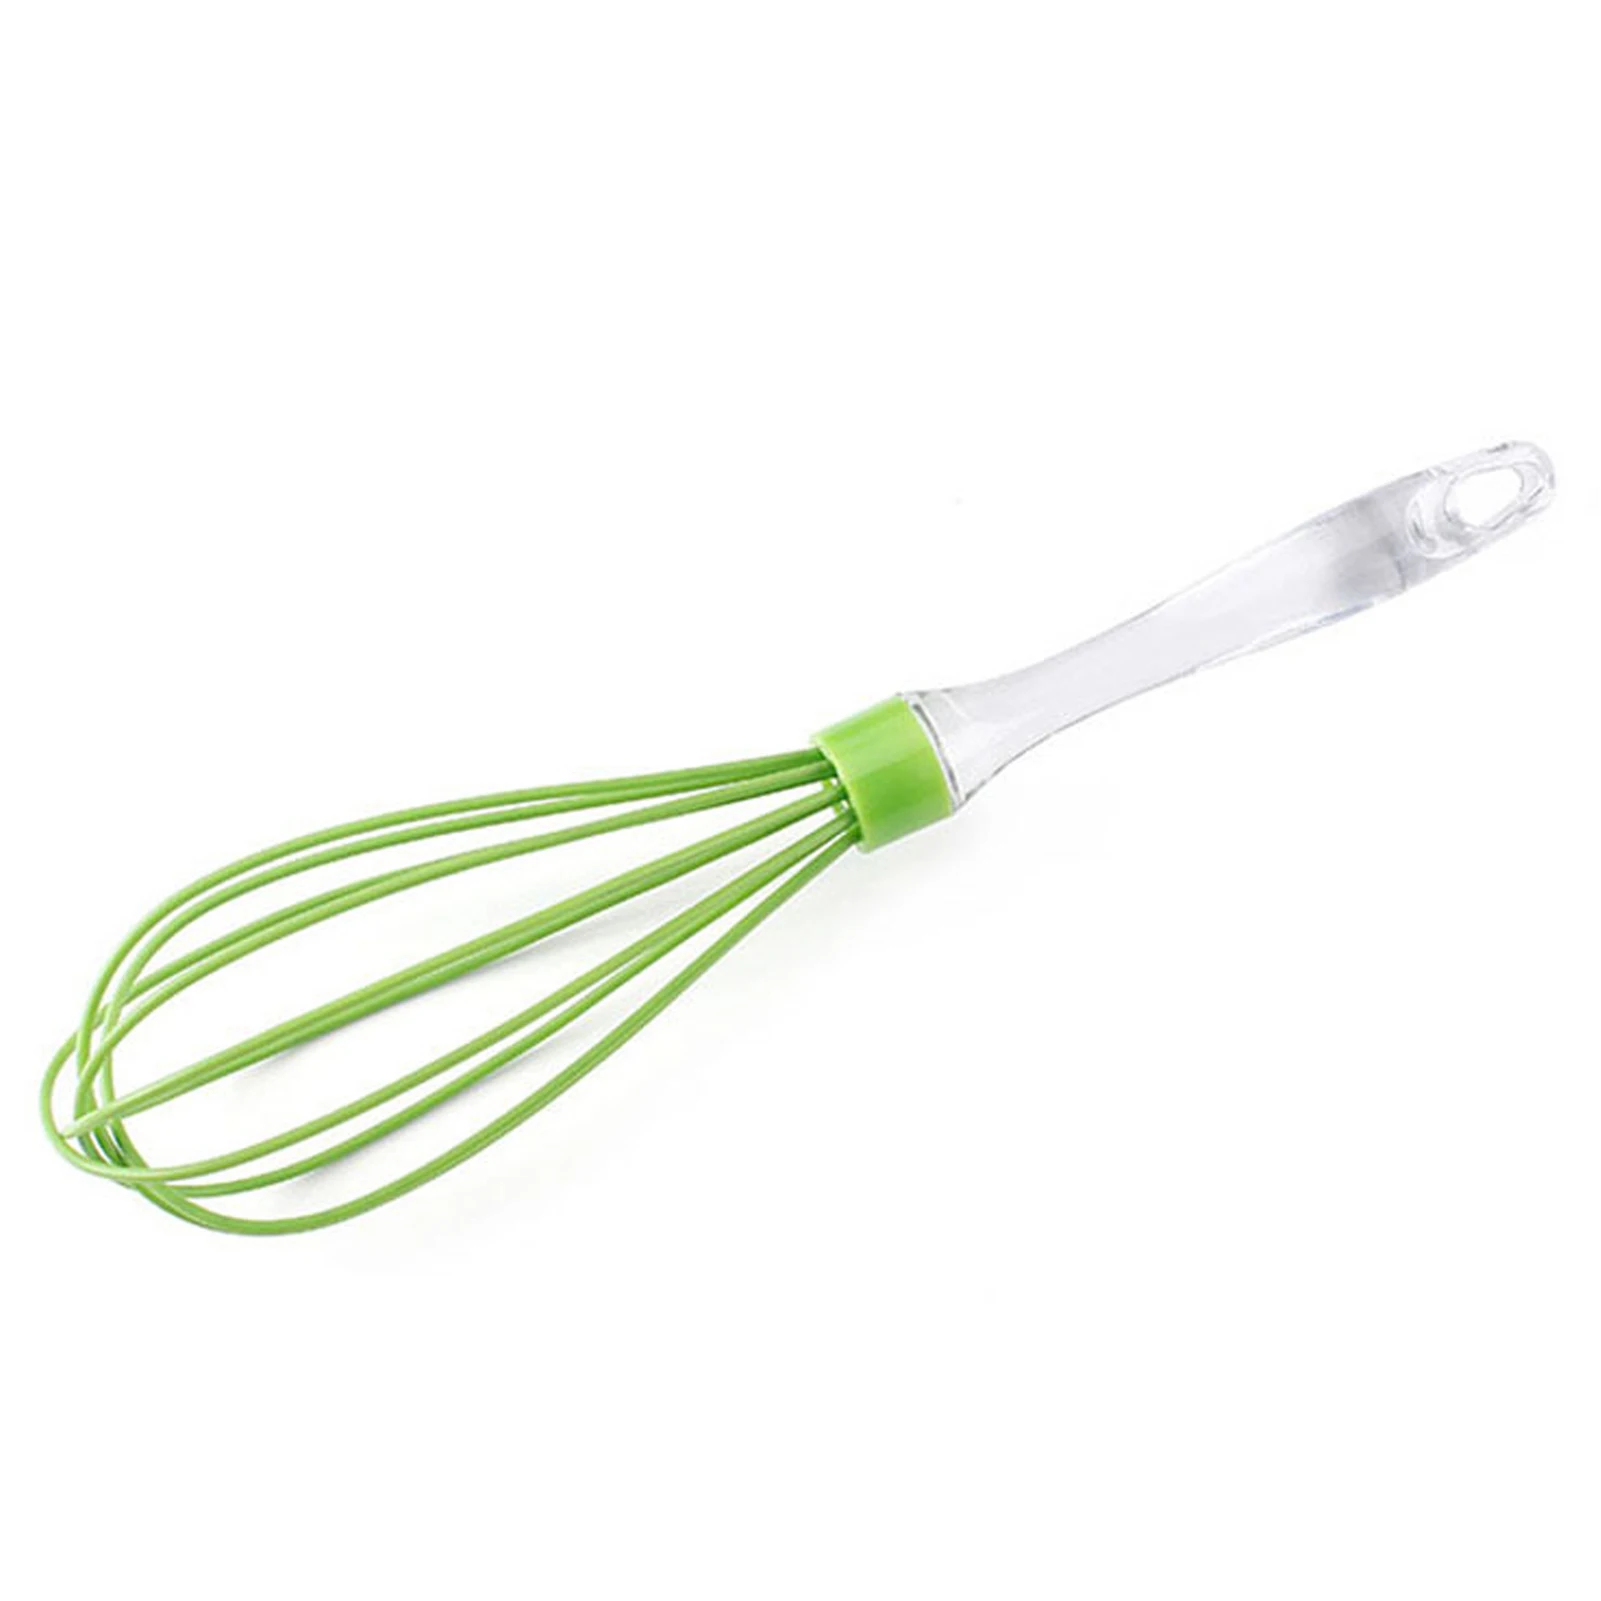 

Силиконовый венчик для выпечки и растушевки, пластиковая ручка для кухни, легко использовать для приготовления пищи, зеленого цвета, без царапин, ручное масло для торта